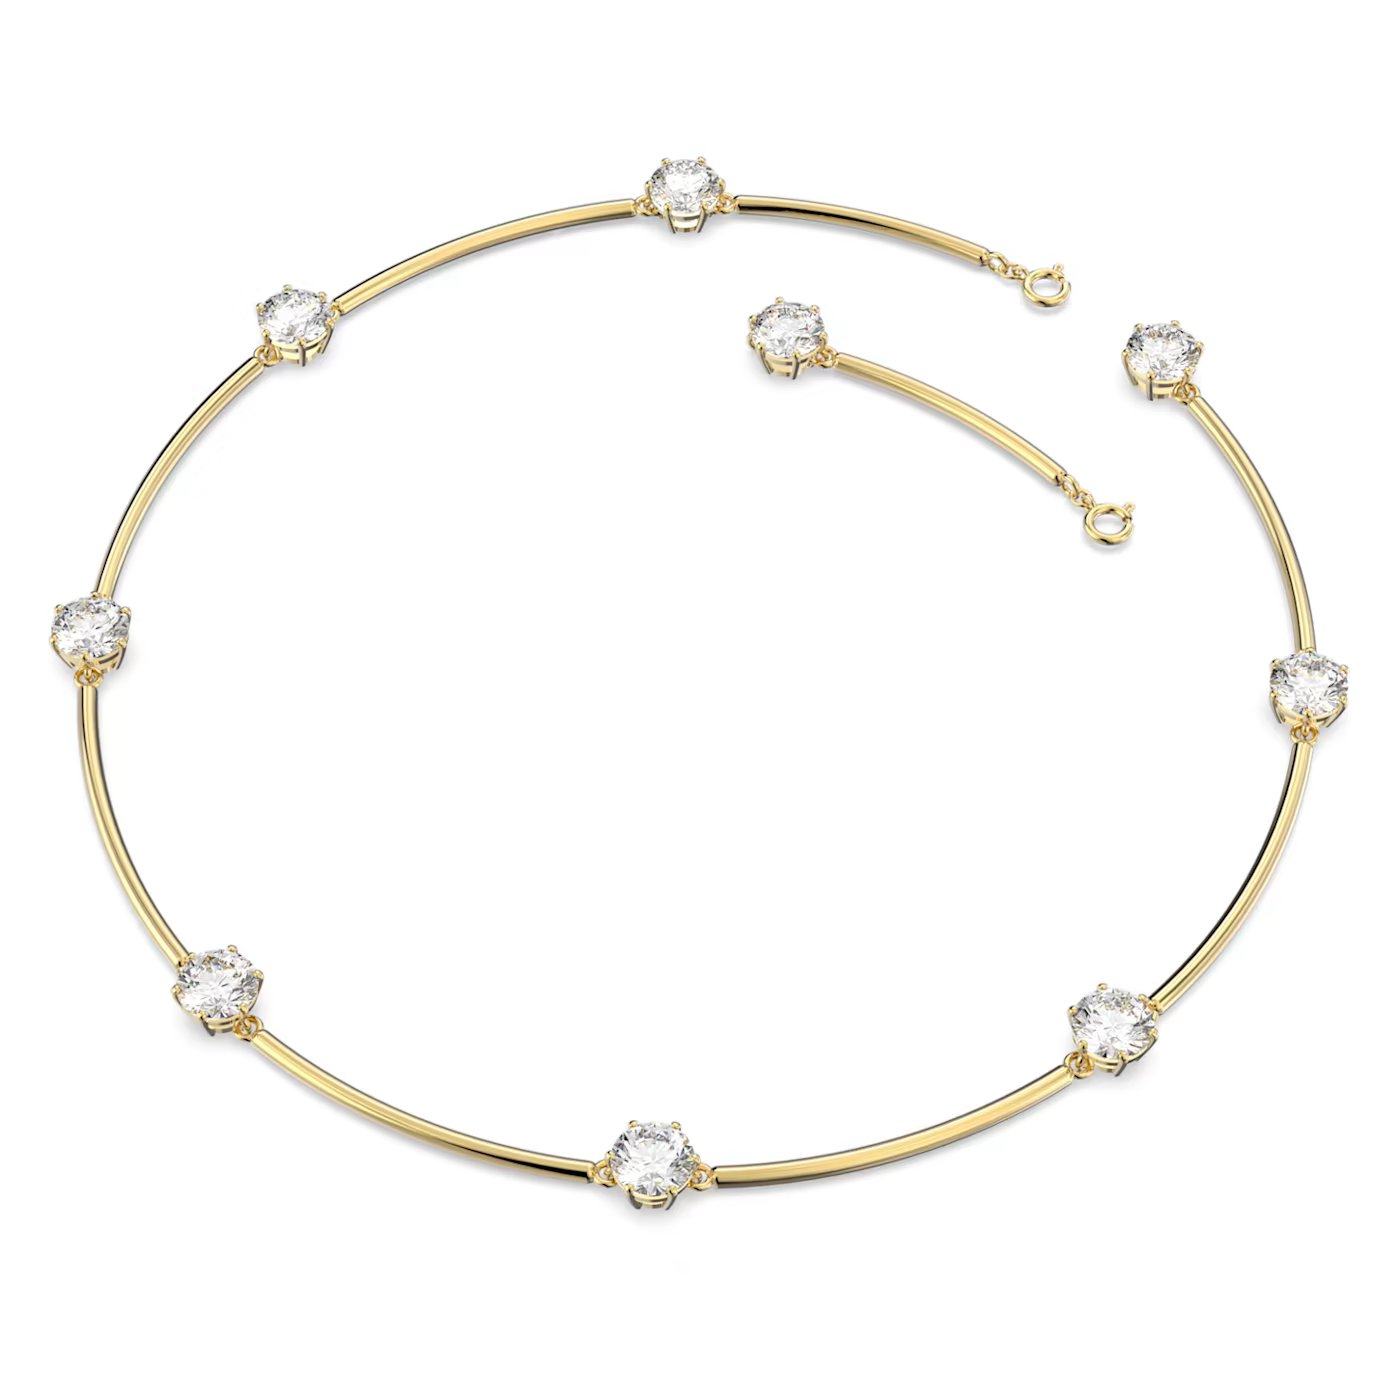 Constella necklace